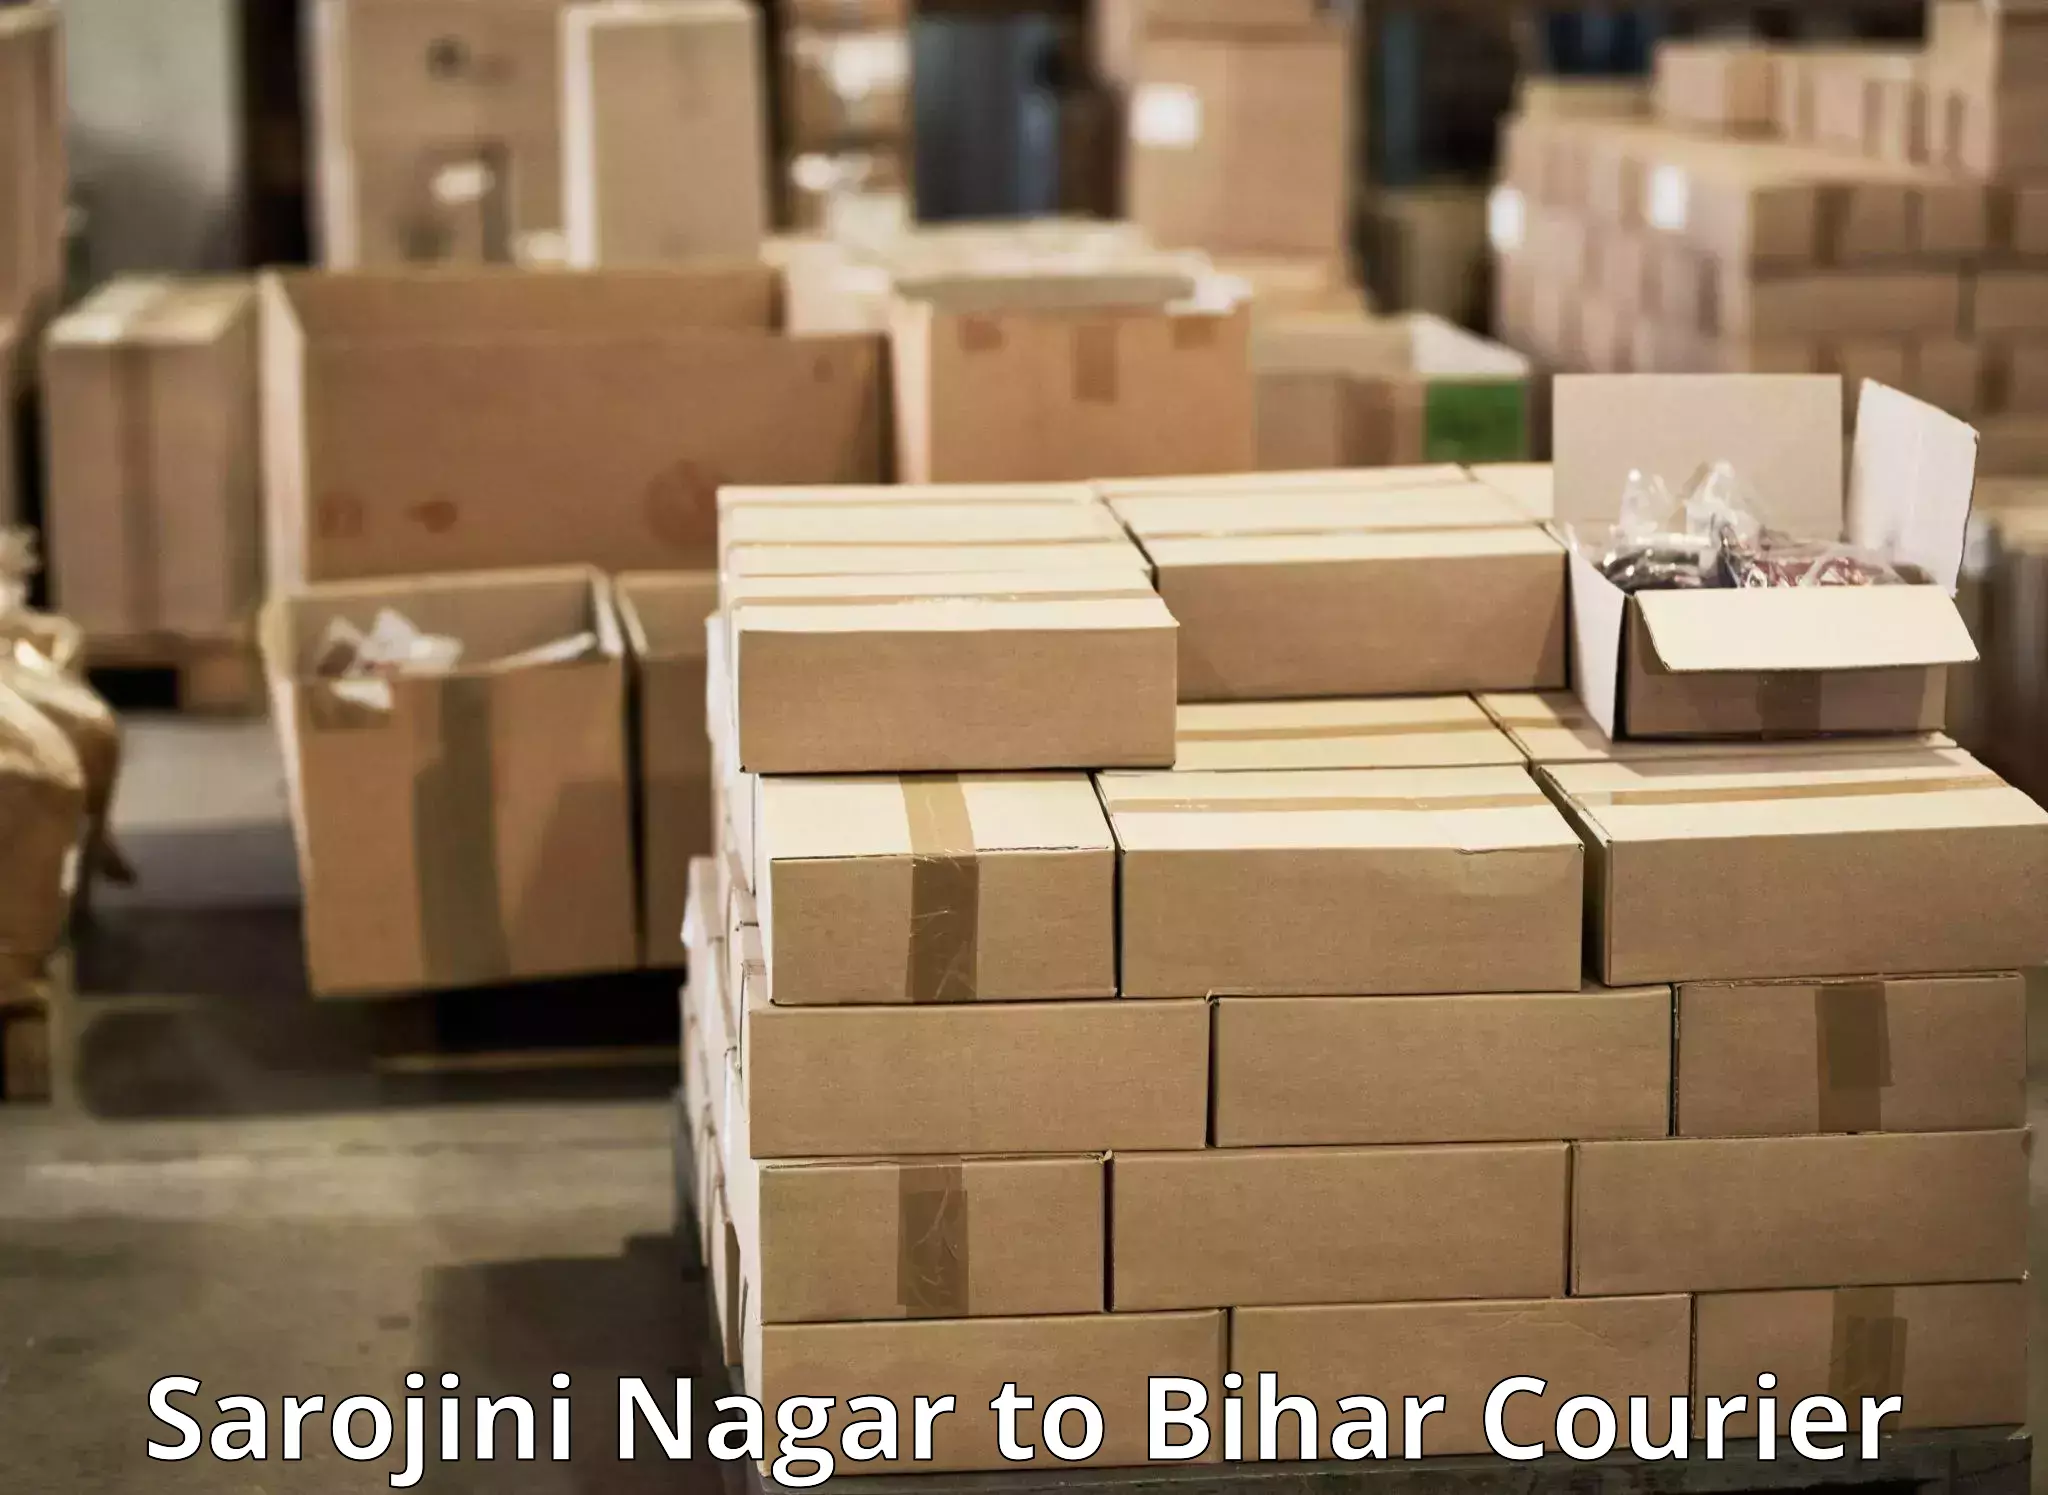 Quick dispatch service Sarojini Nagar to Aurangabad Bihar